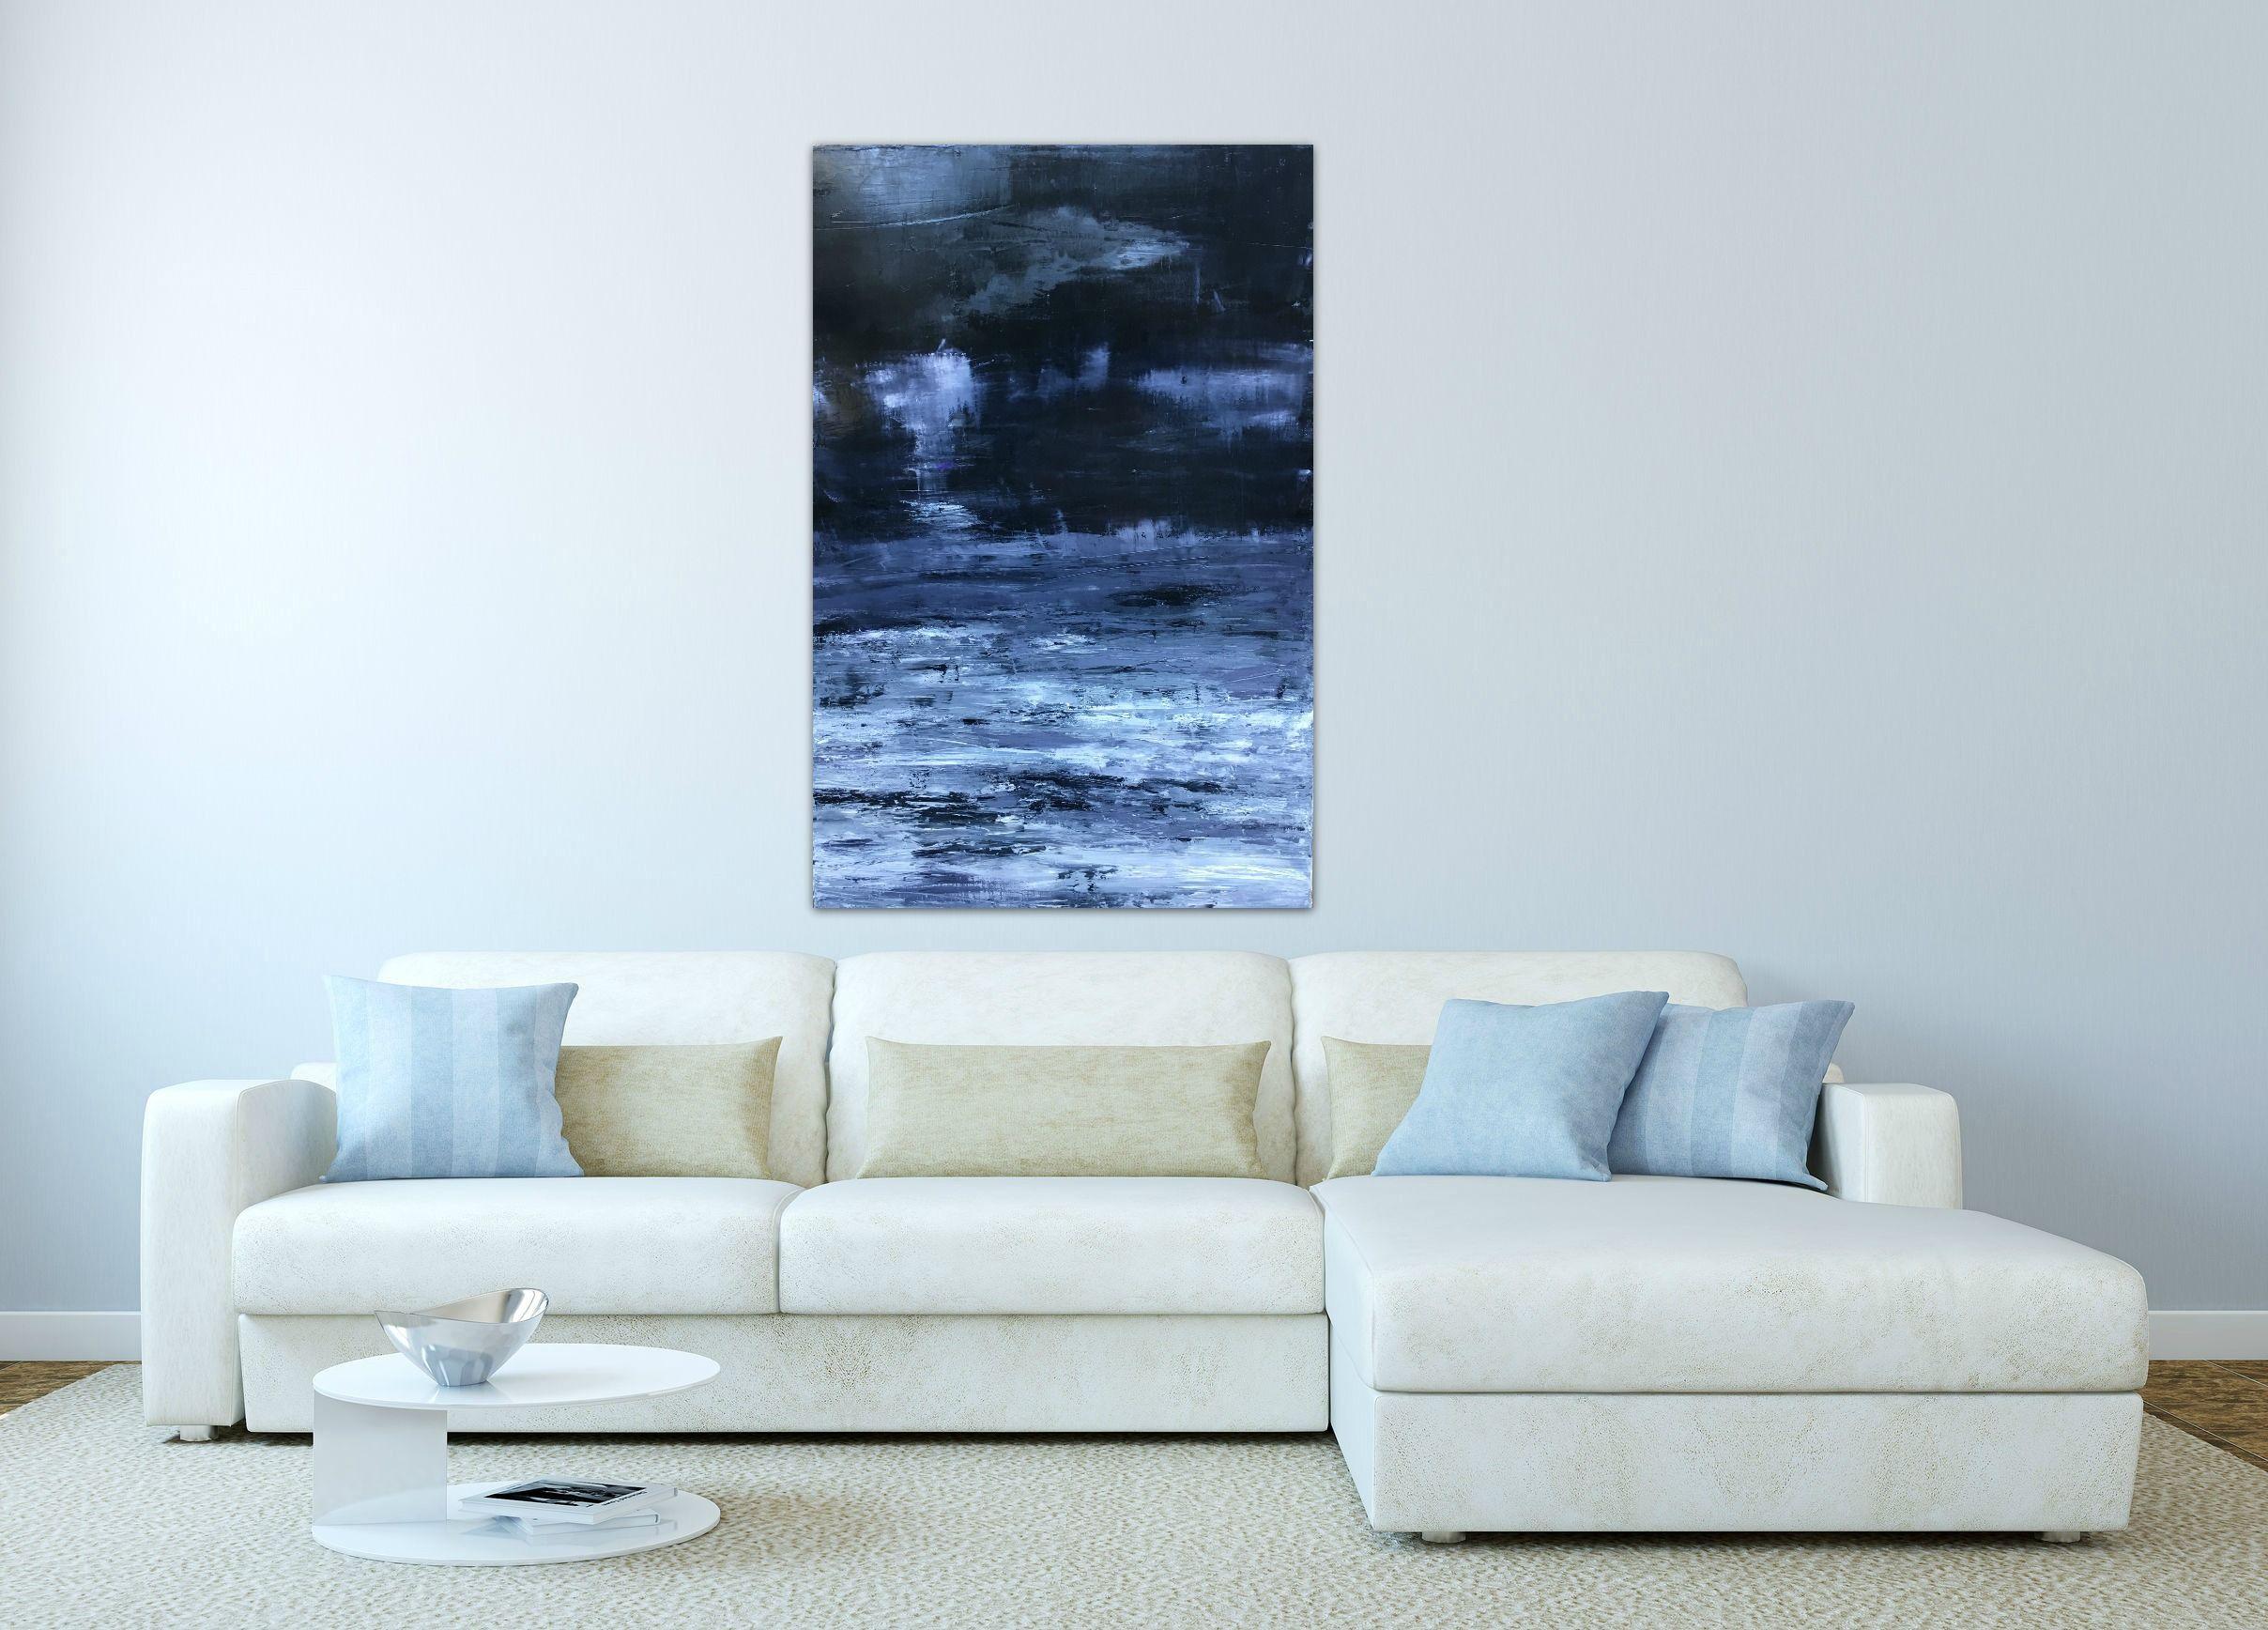 Étude de paysage en noir et blanc II, peinture, huile sur toile - Abstrait Painting par Angela Dierks